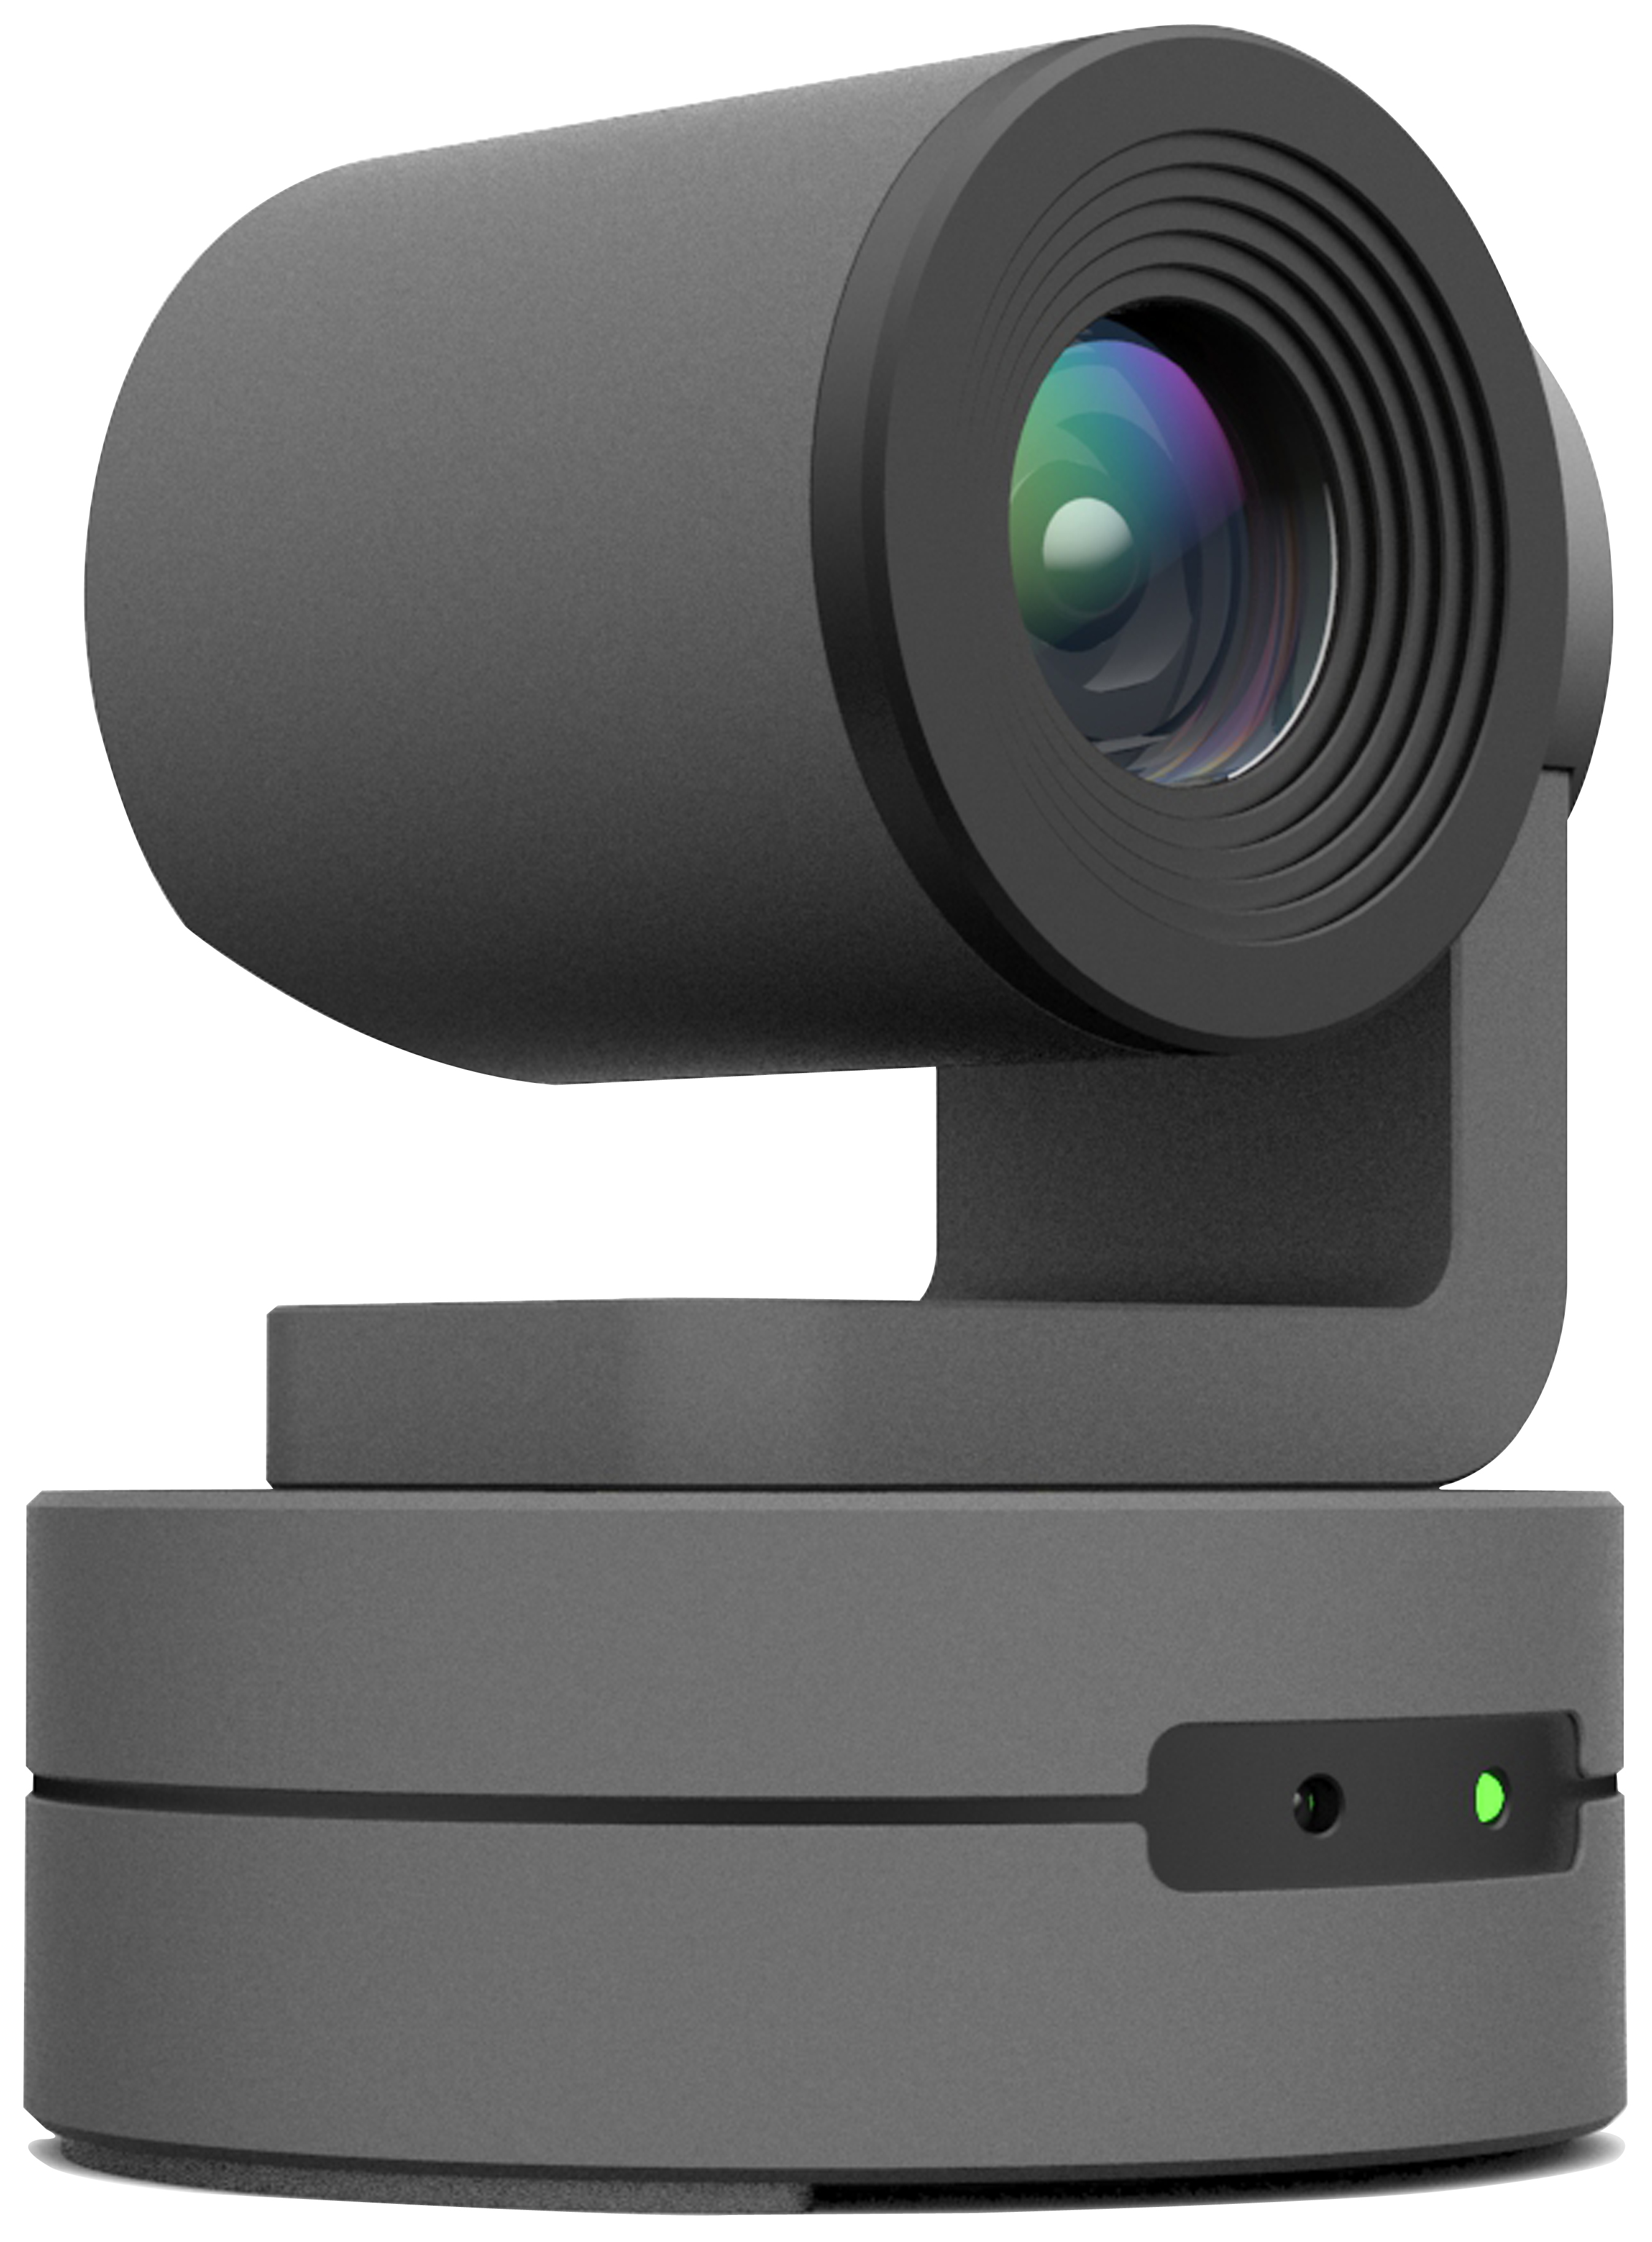 针孔摄像头检测器软件 检测酒店装没装摄像头 - 精品软件 - 小嘀咕